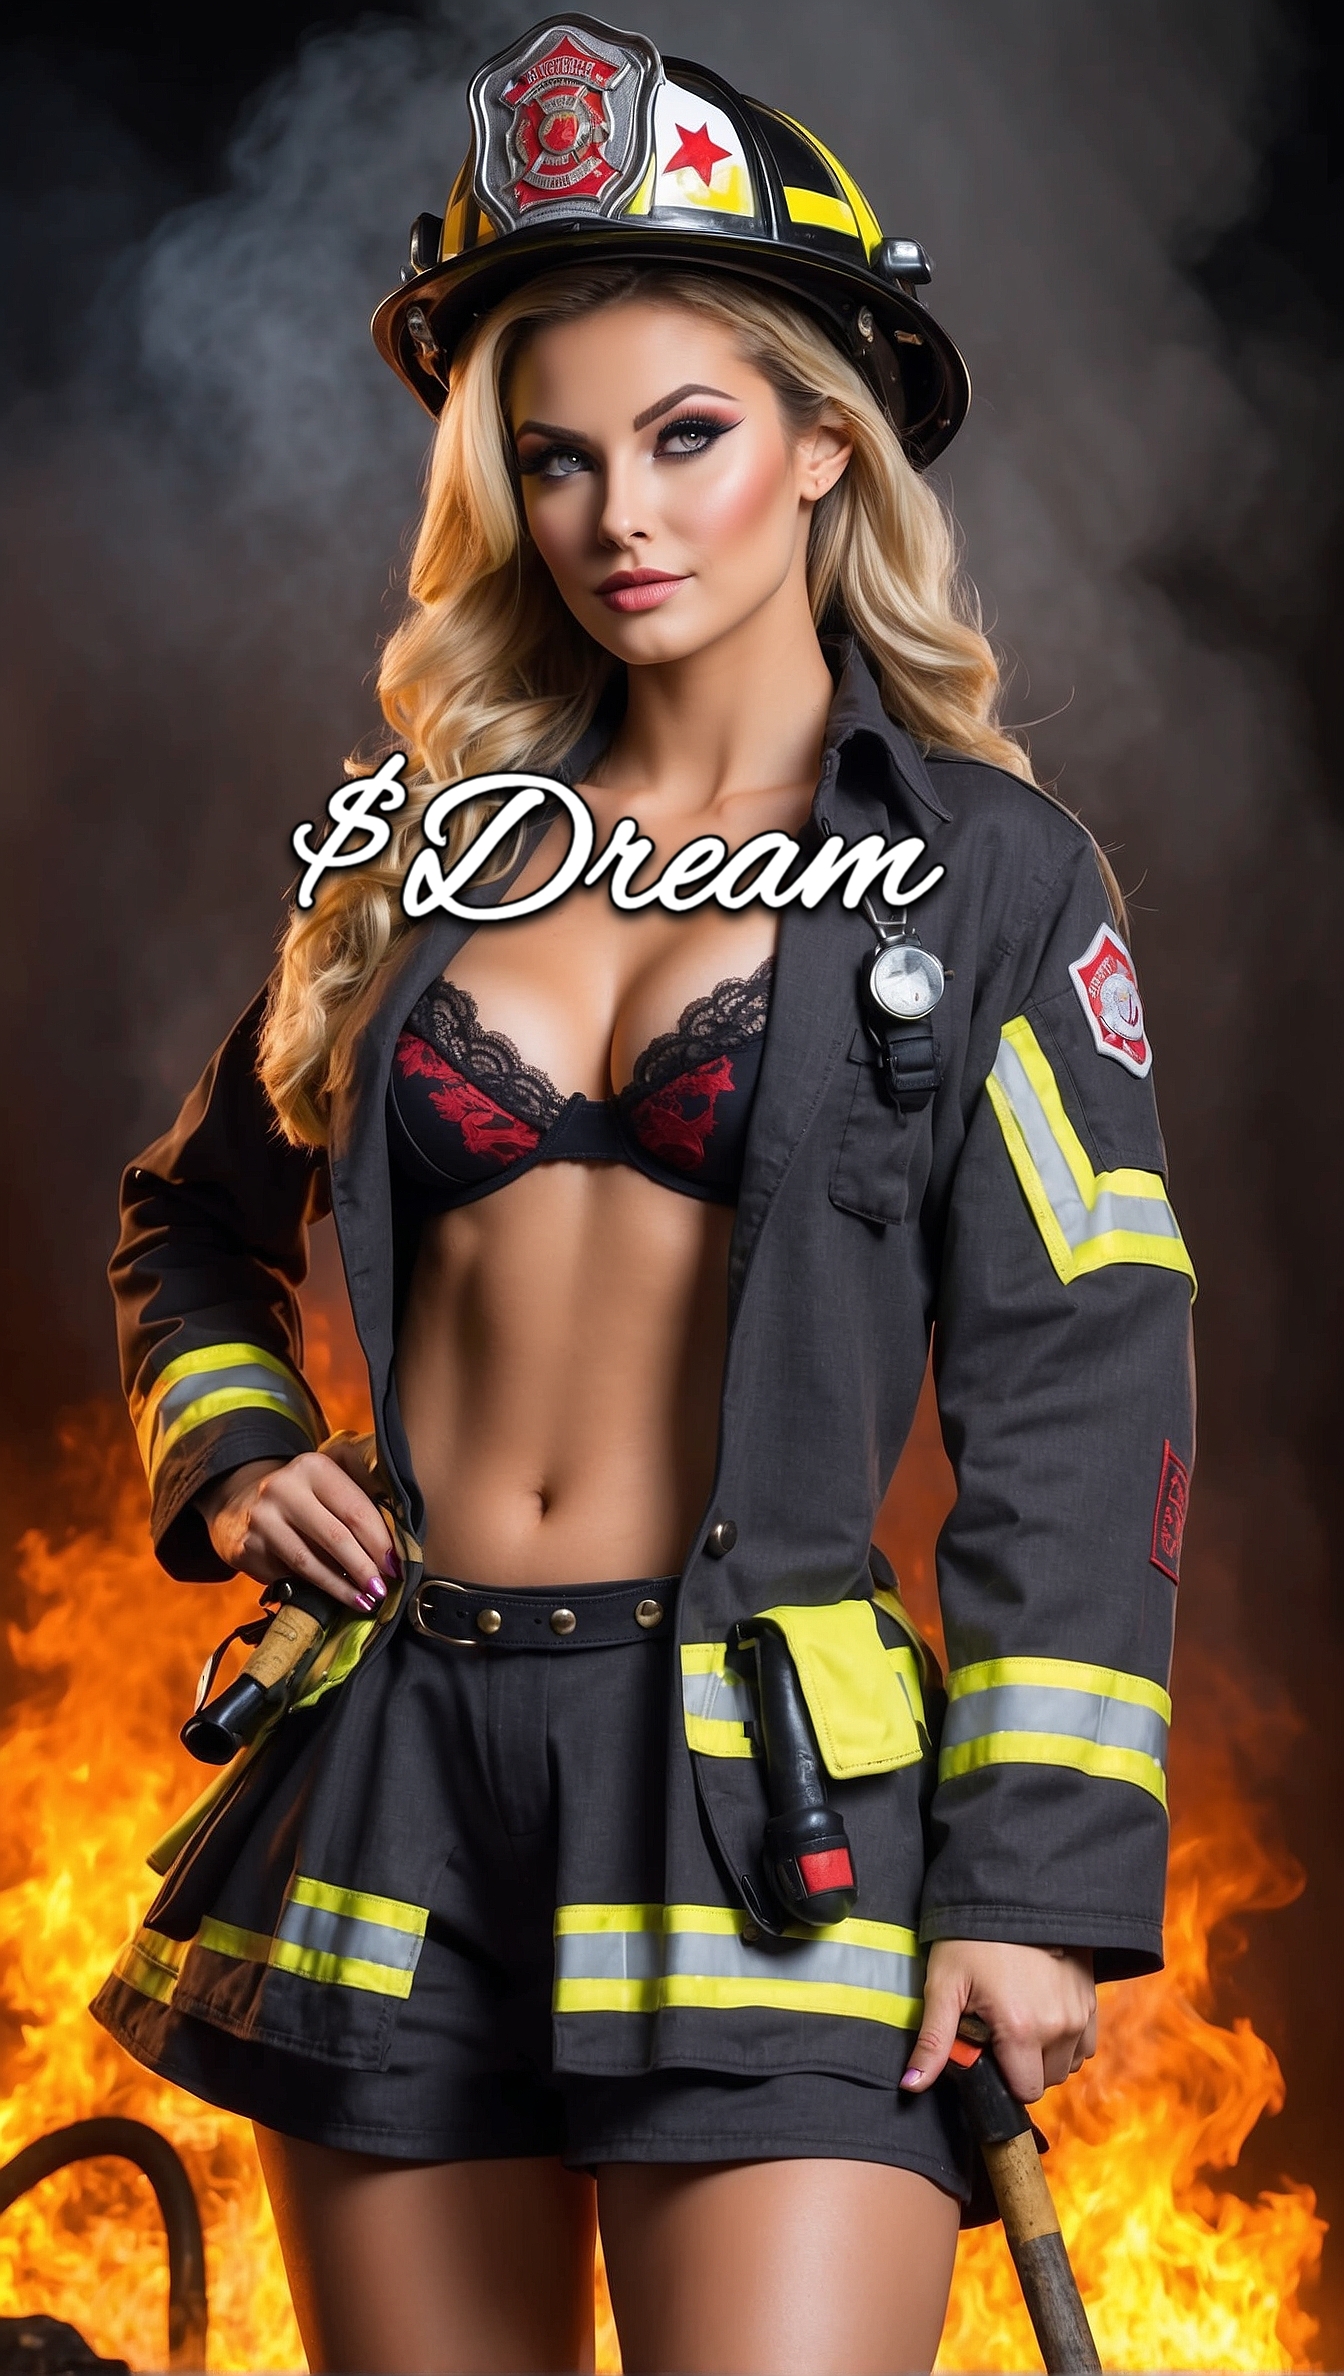 Firefighter Dream Girl